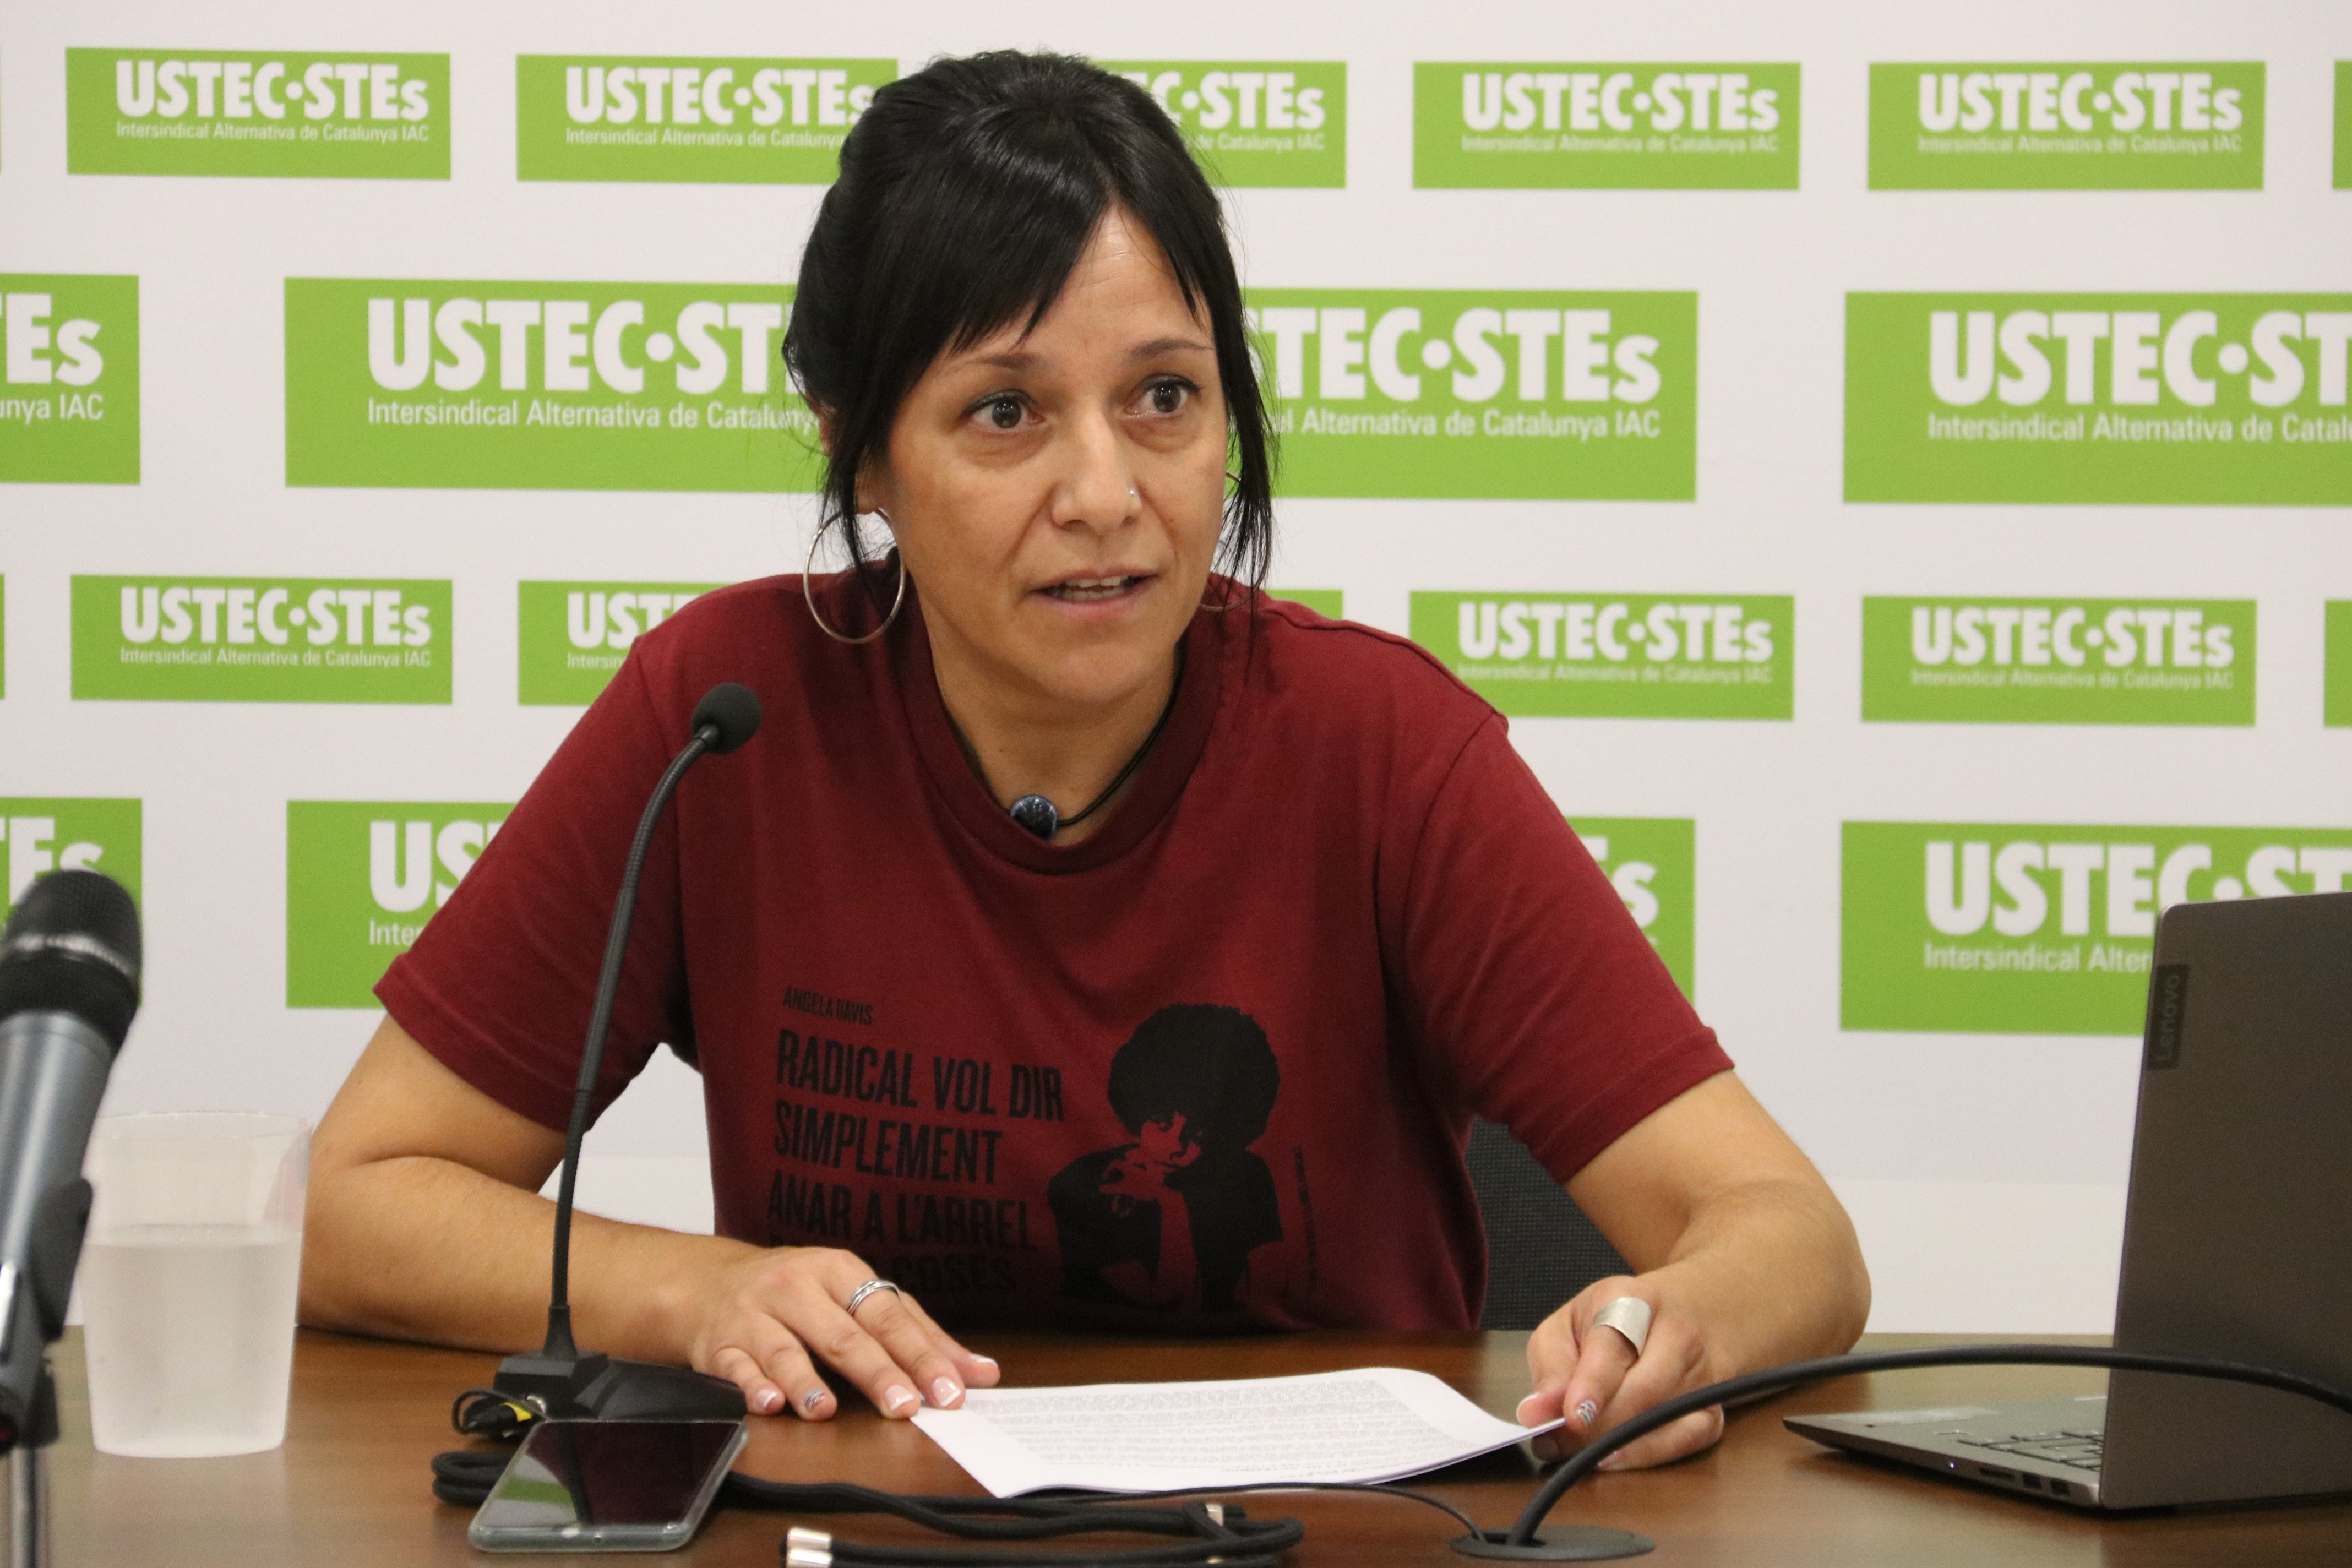 Ustec critica l'acord entre el Govern i el PSC: "Són els pressupostos de la concertada"